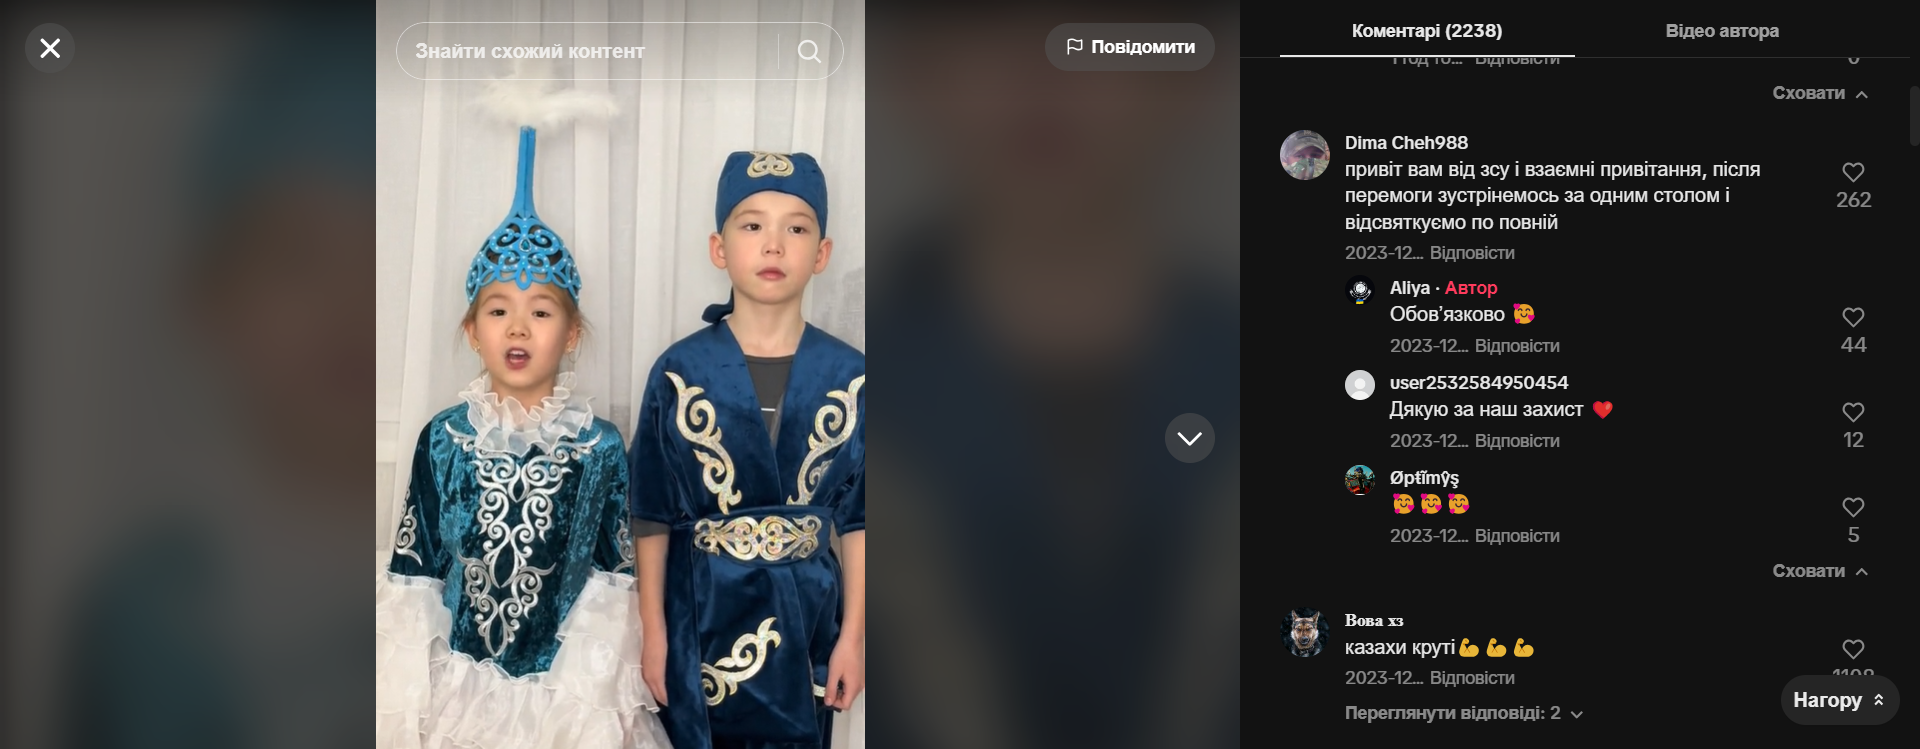 Детки из Казахстана на украинском языке поздравили украинцев с Новым годом и растрогали сеть: отреагировали даже в ВСУ